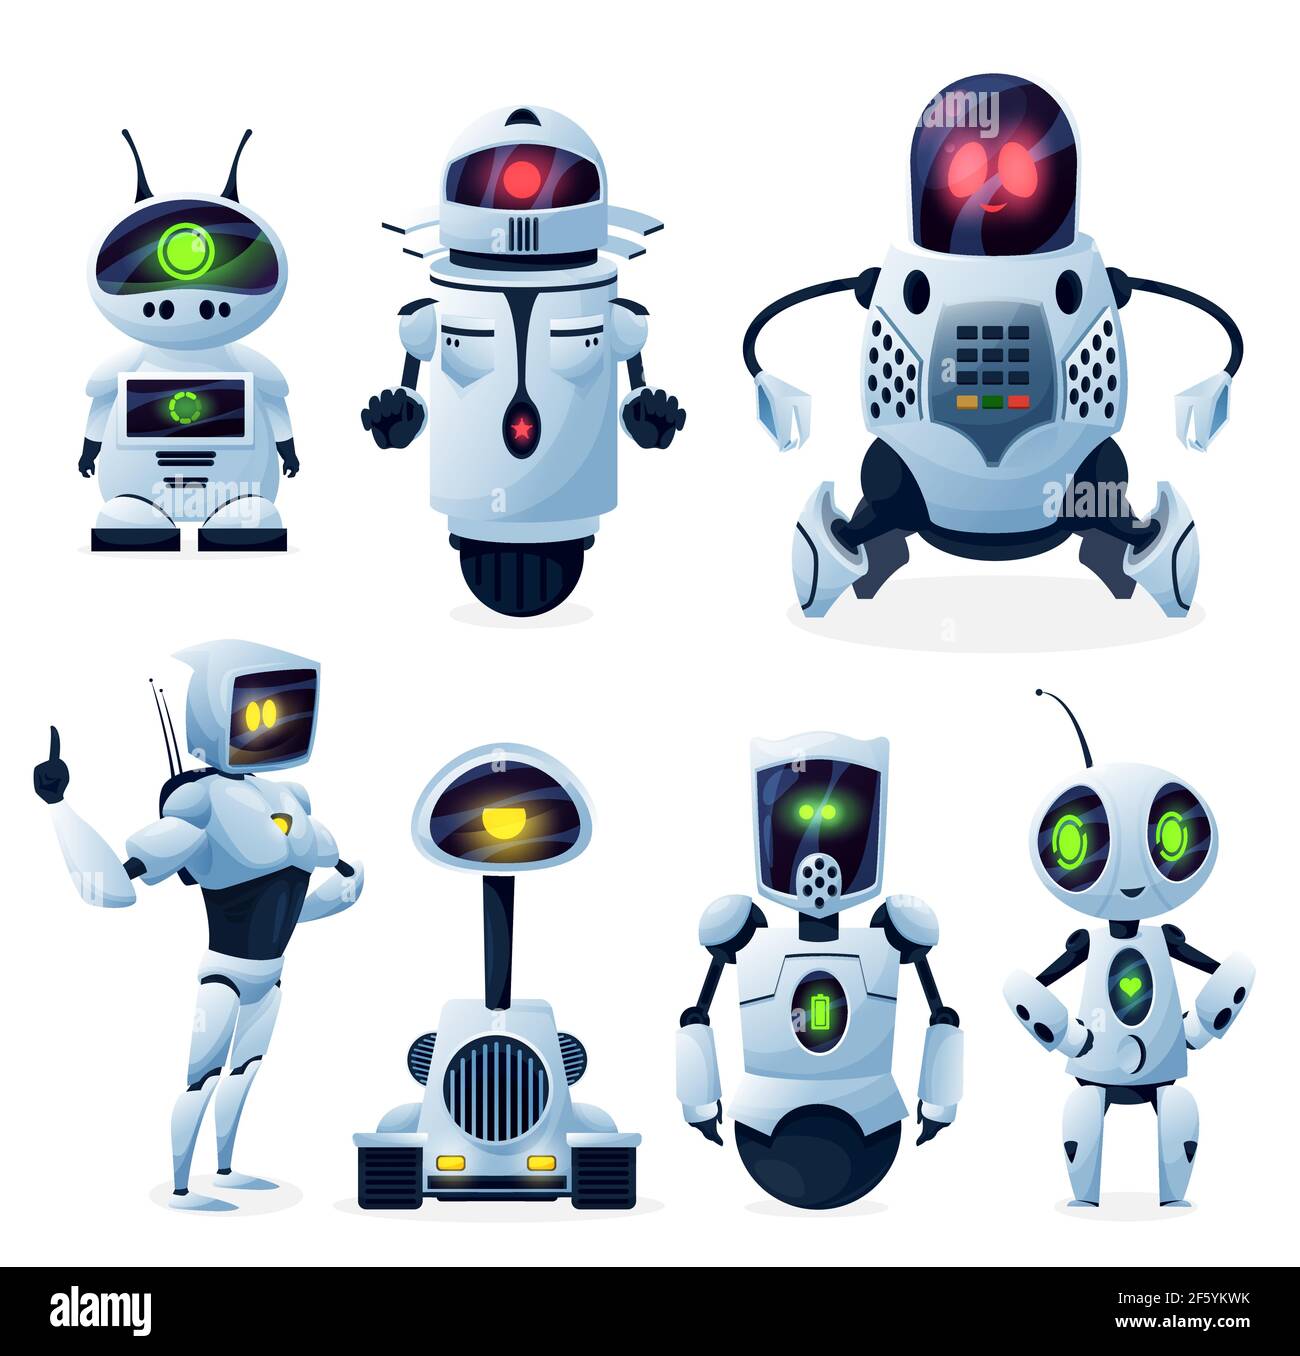 Futurs androïdes, cyborgs étrangers ou jouets robotisés. Robots humanoïdes  extraterrestres mignons, avec mains et jambes, roues et pistes, pinces et  pinces, glowi Image Vectorielle Stock - Alamy